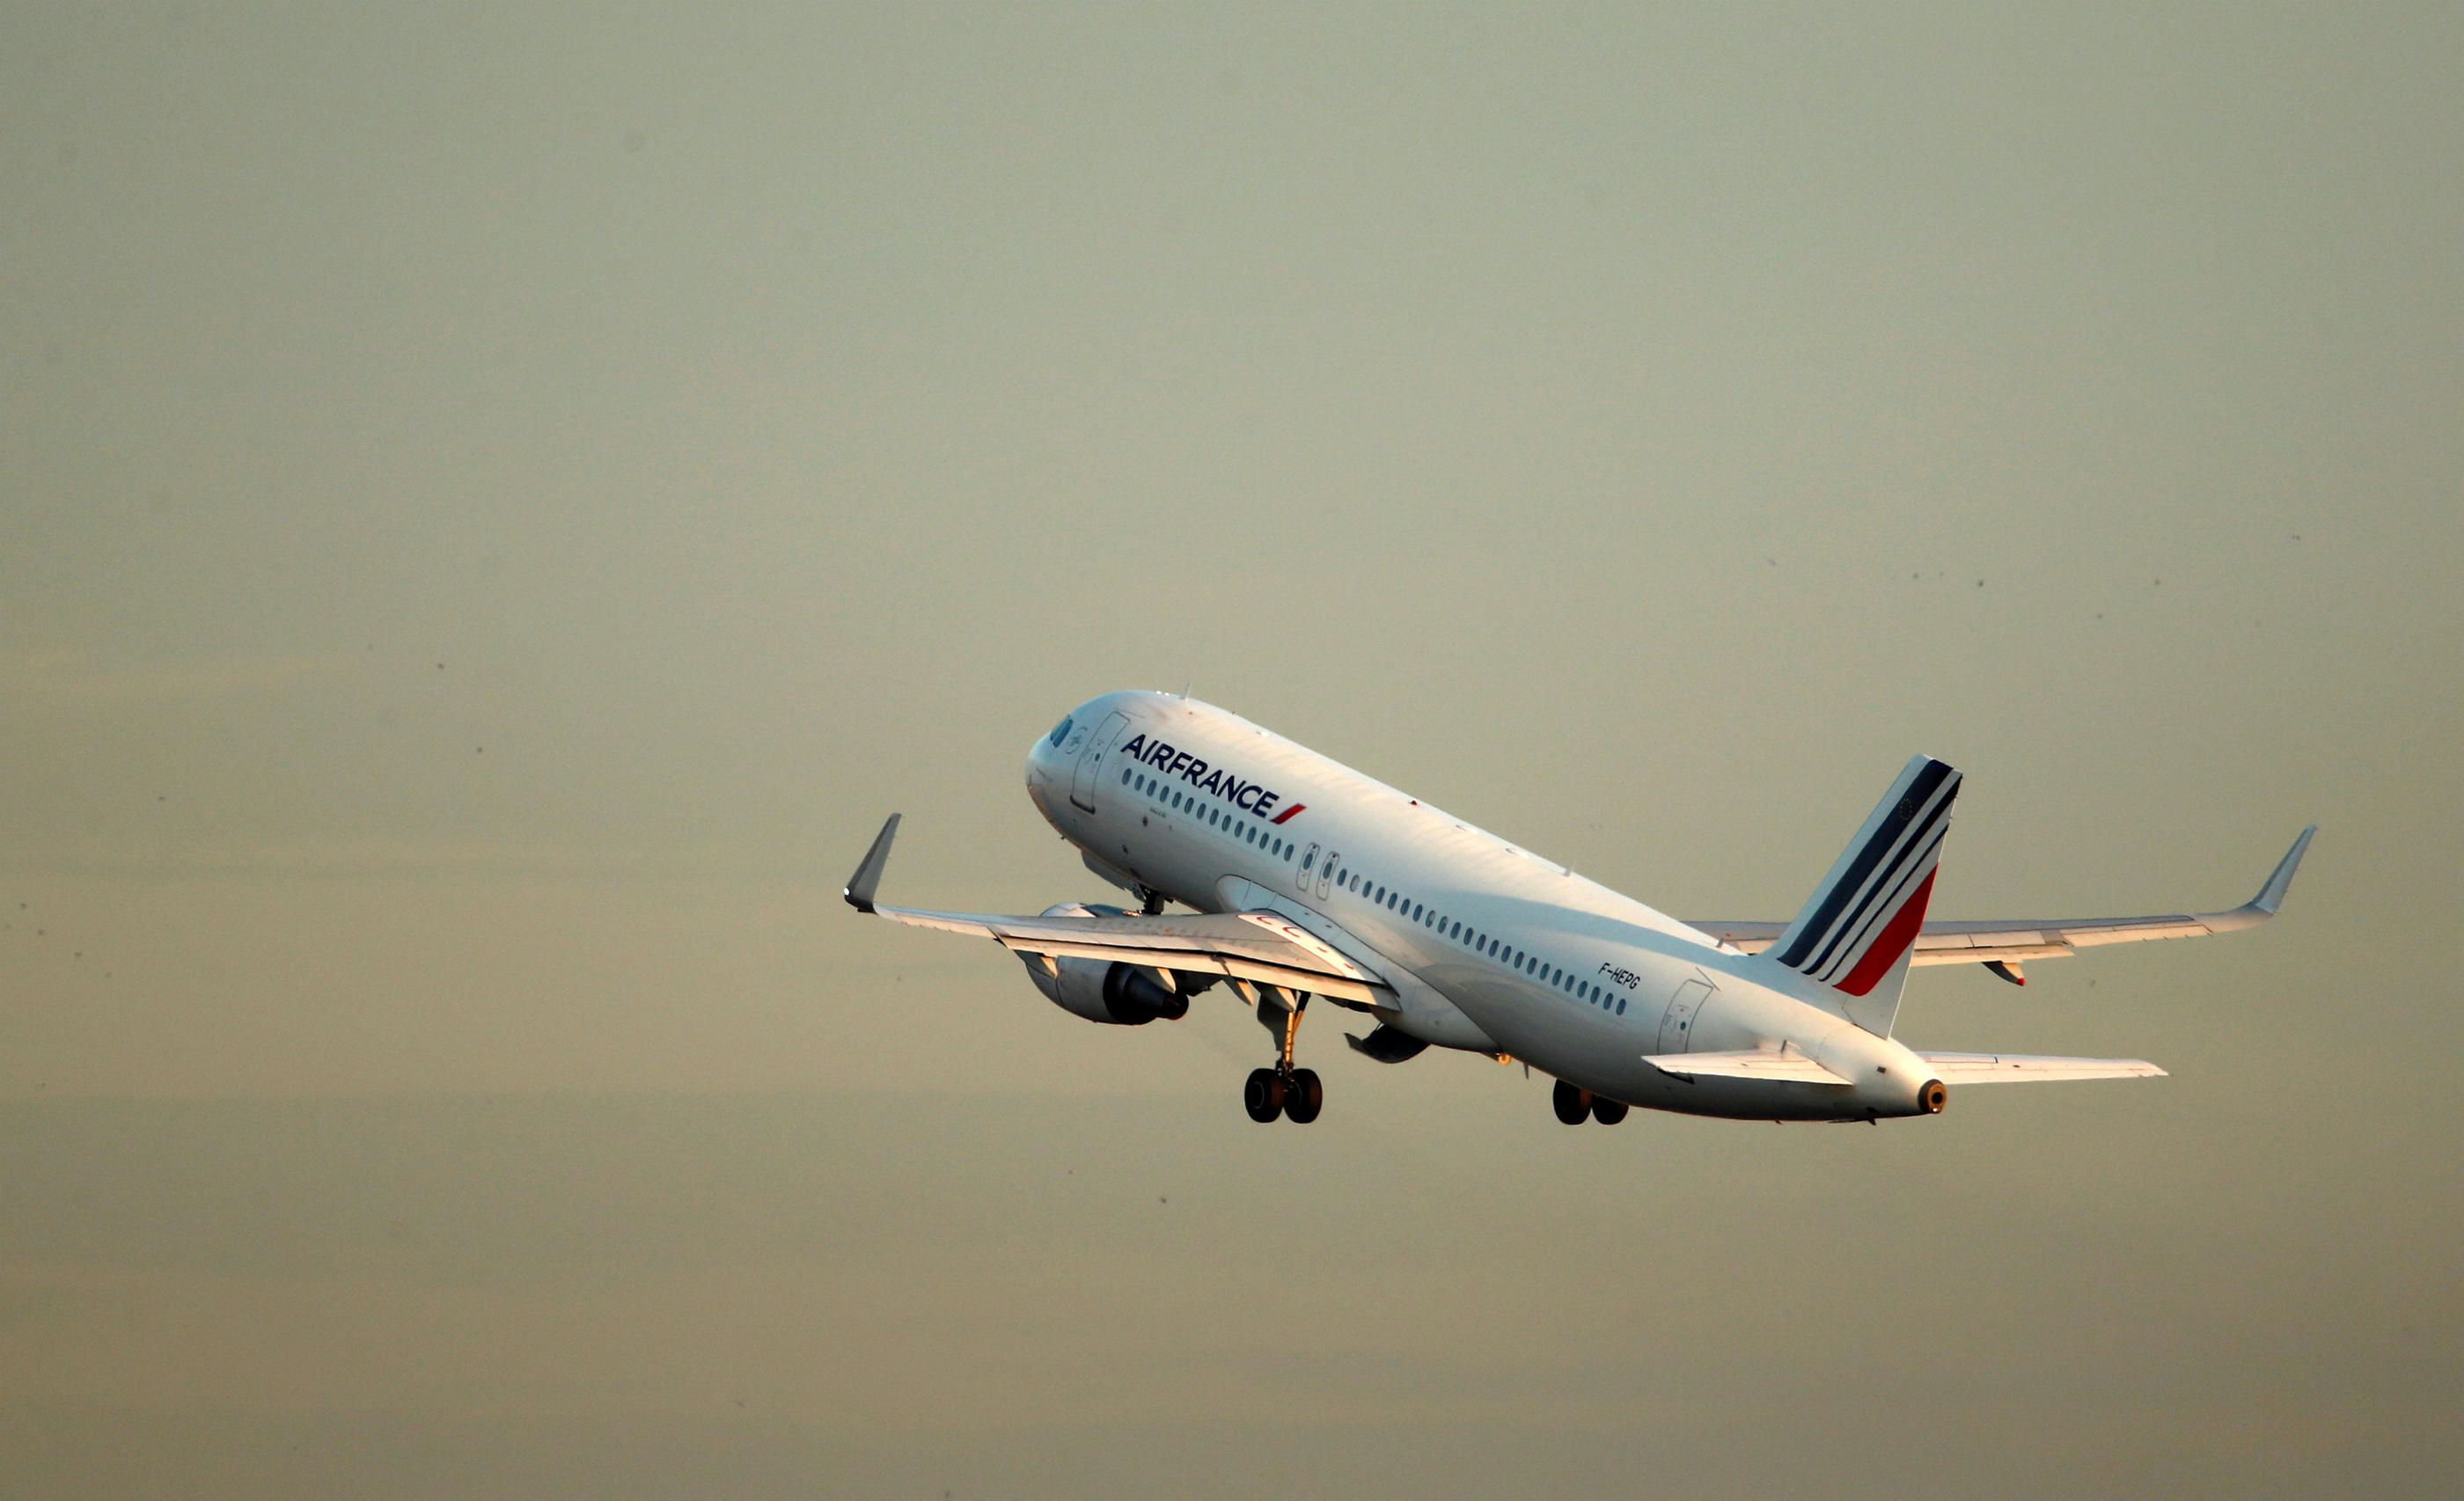 Roissy, le 26 août 2018. Un avion Airbus A320-200 d'Air France décolle à l'aéroport Charles-de-Gaulle. REUTERS/Christian Hartmann